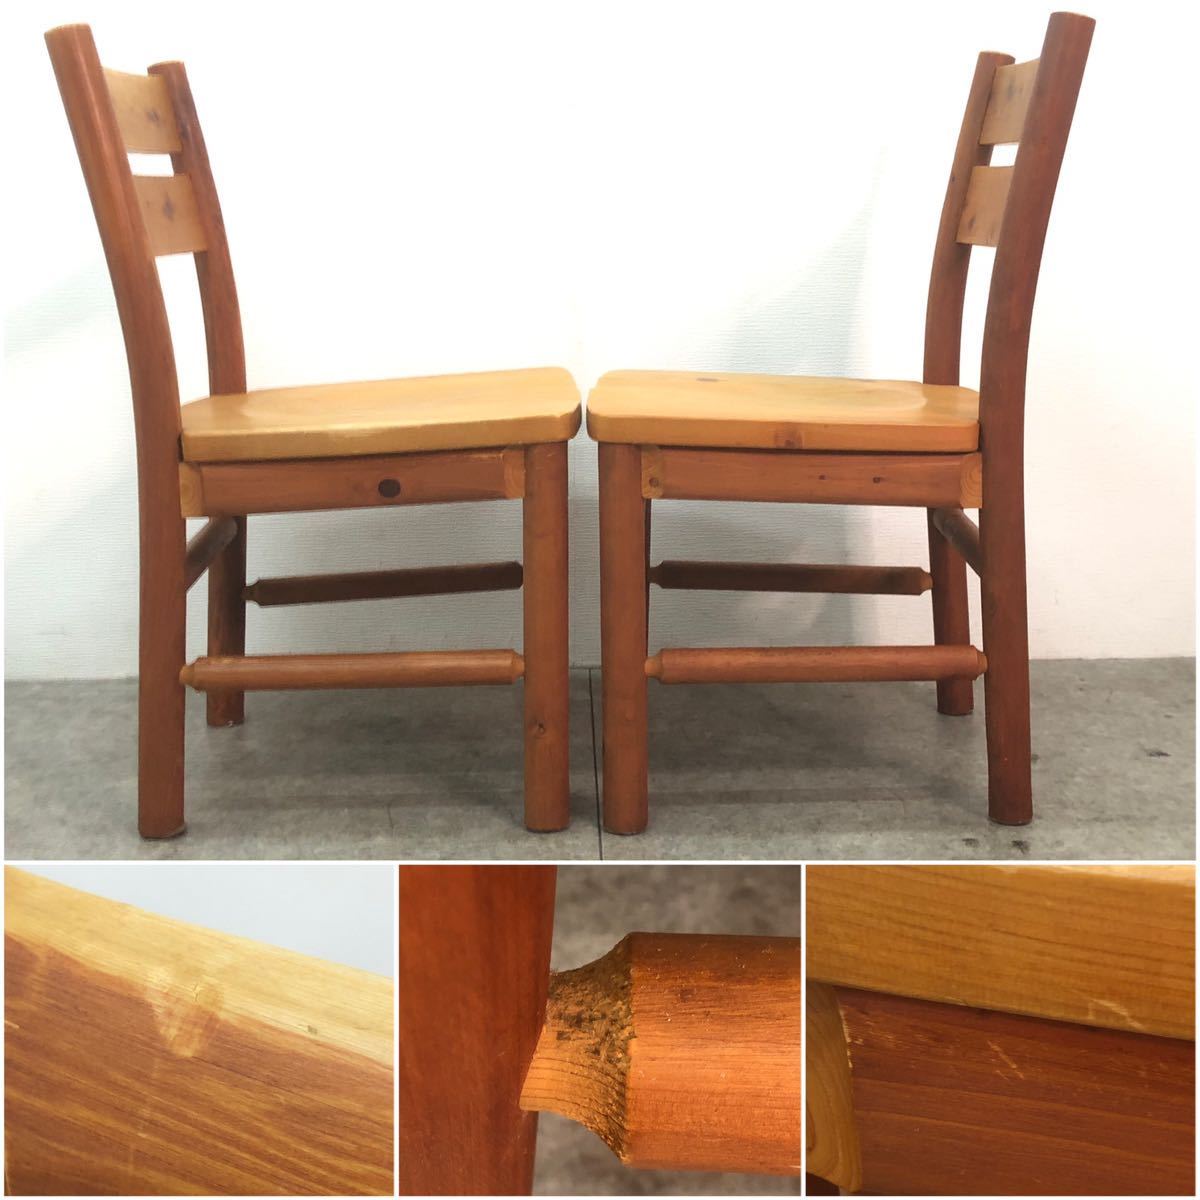 □柏木工 KASHIWA ダイニングチェア 2脚セット 無垢材 木製 食卓椅子 ZC11 カントリー調 イス いす 椅子 チェア アームレス □23110606_画像5